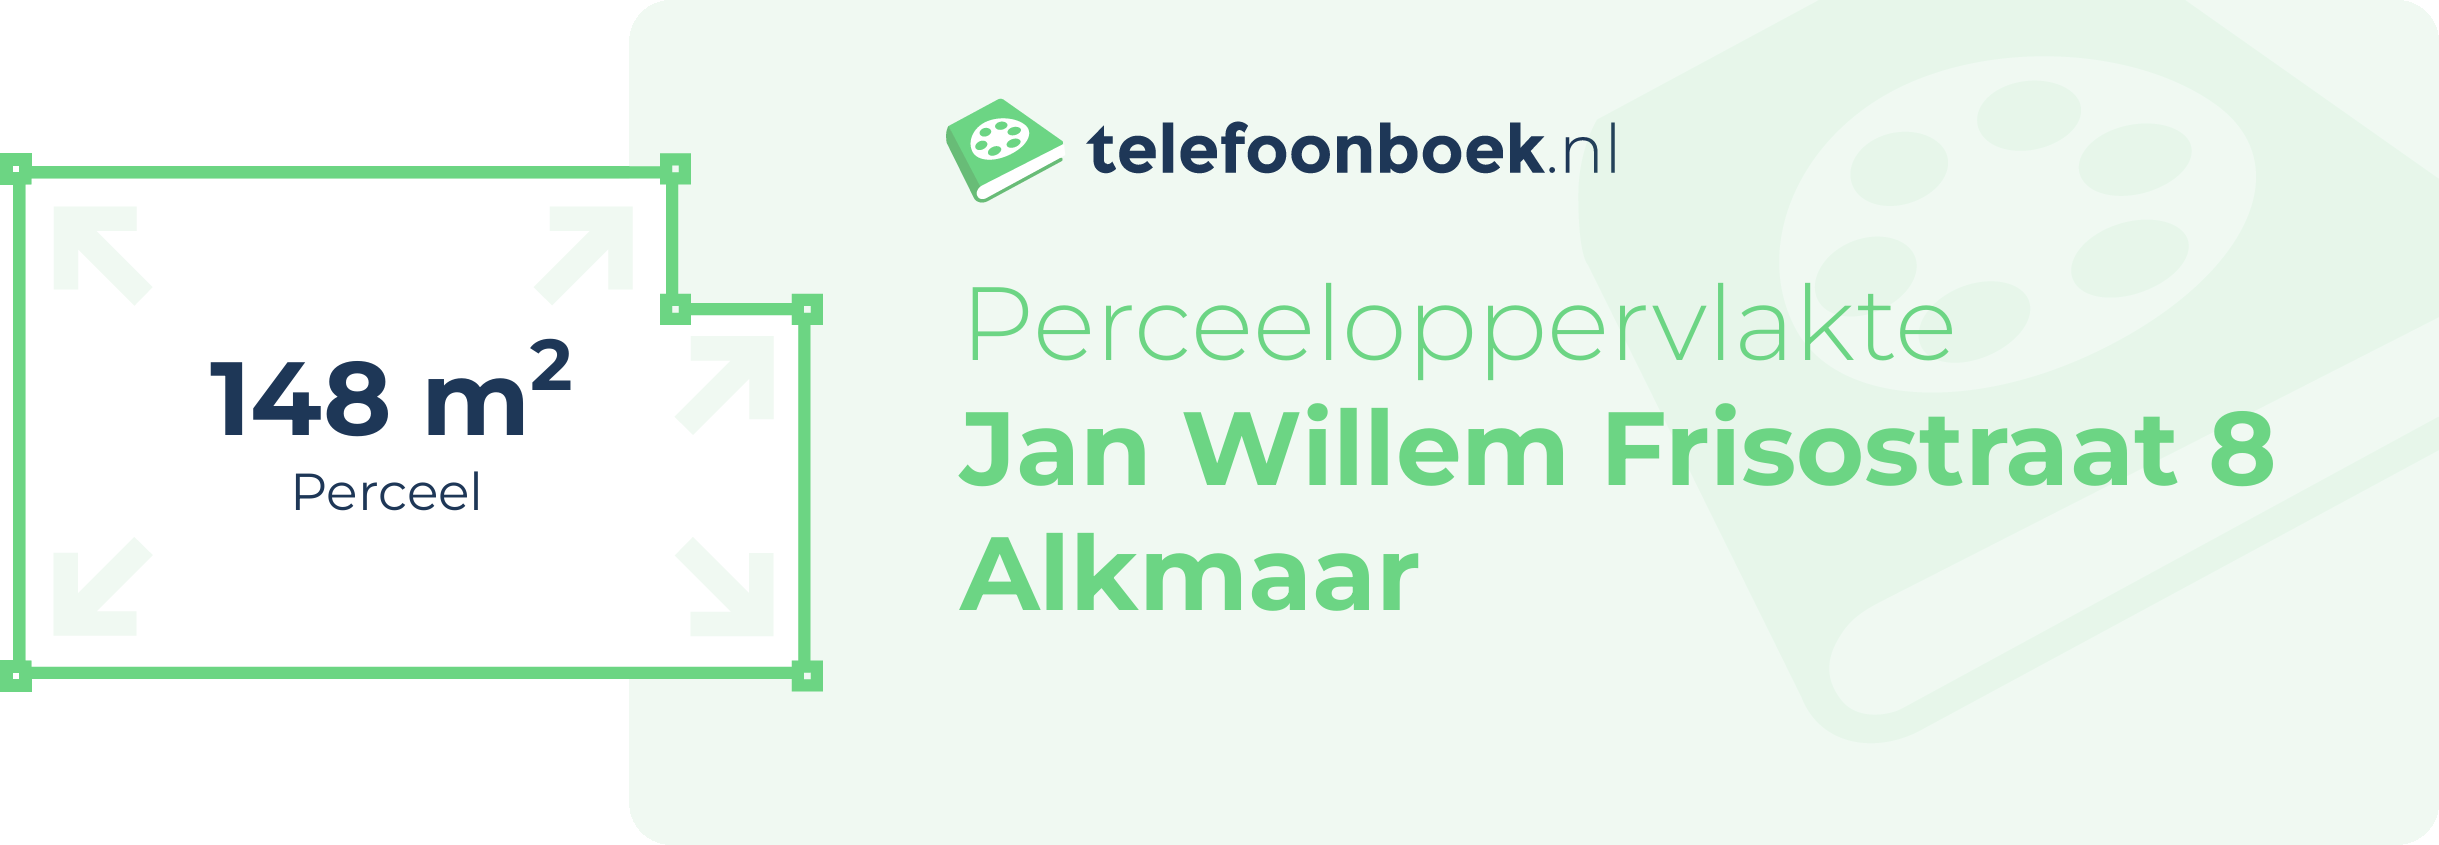 Perceeloppervlakte Jan Willem Frisostraat 8 Alkmaar